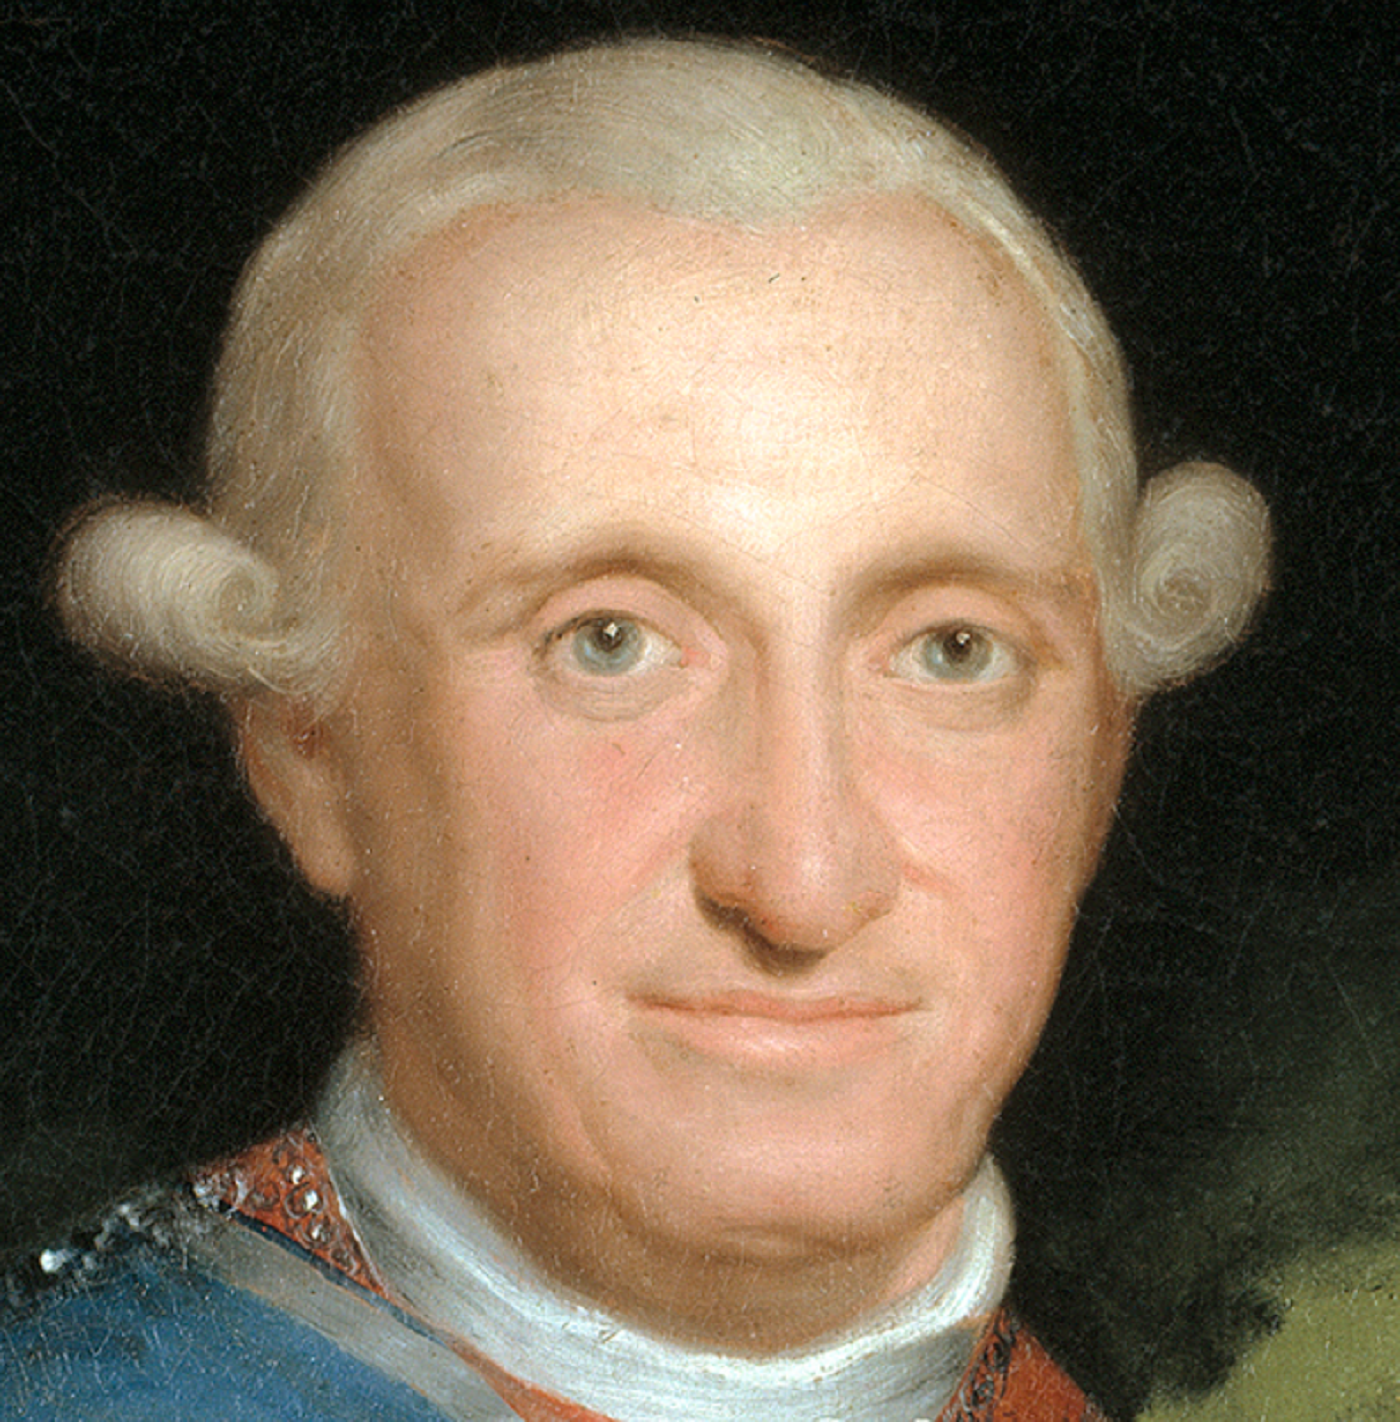 Neix Carles IV, el Borbó que va vendre la Corona espanyola a Napoleó